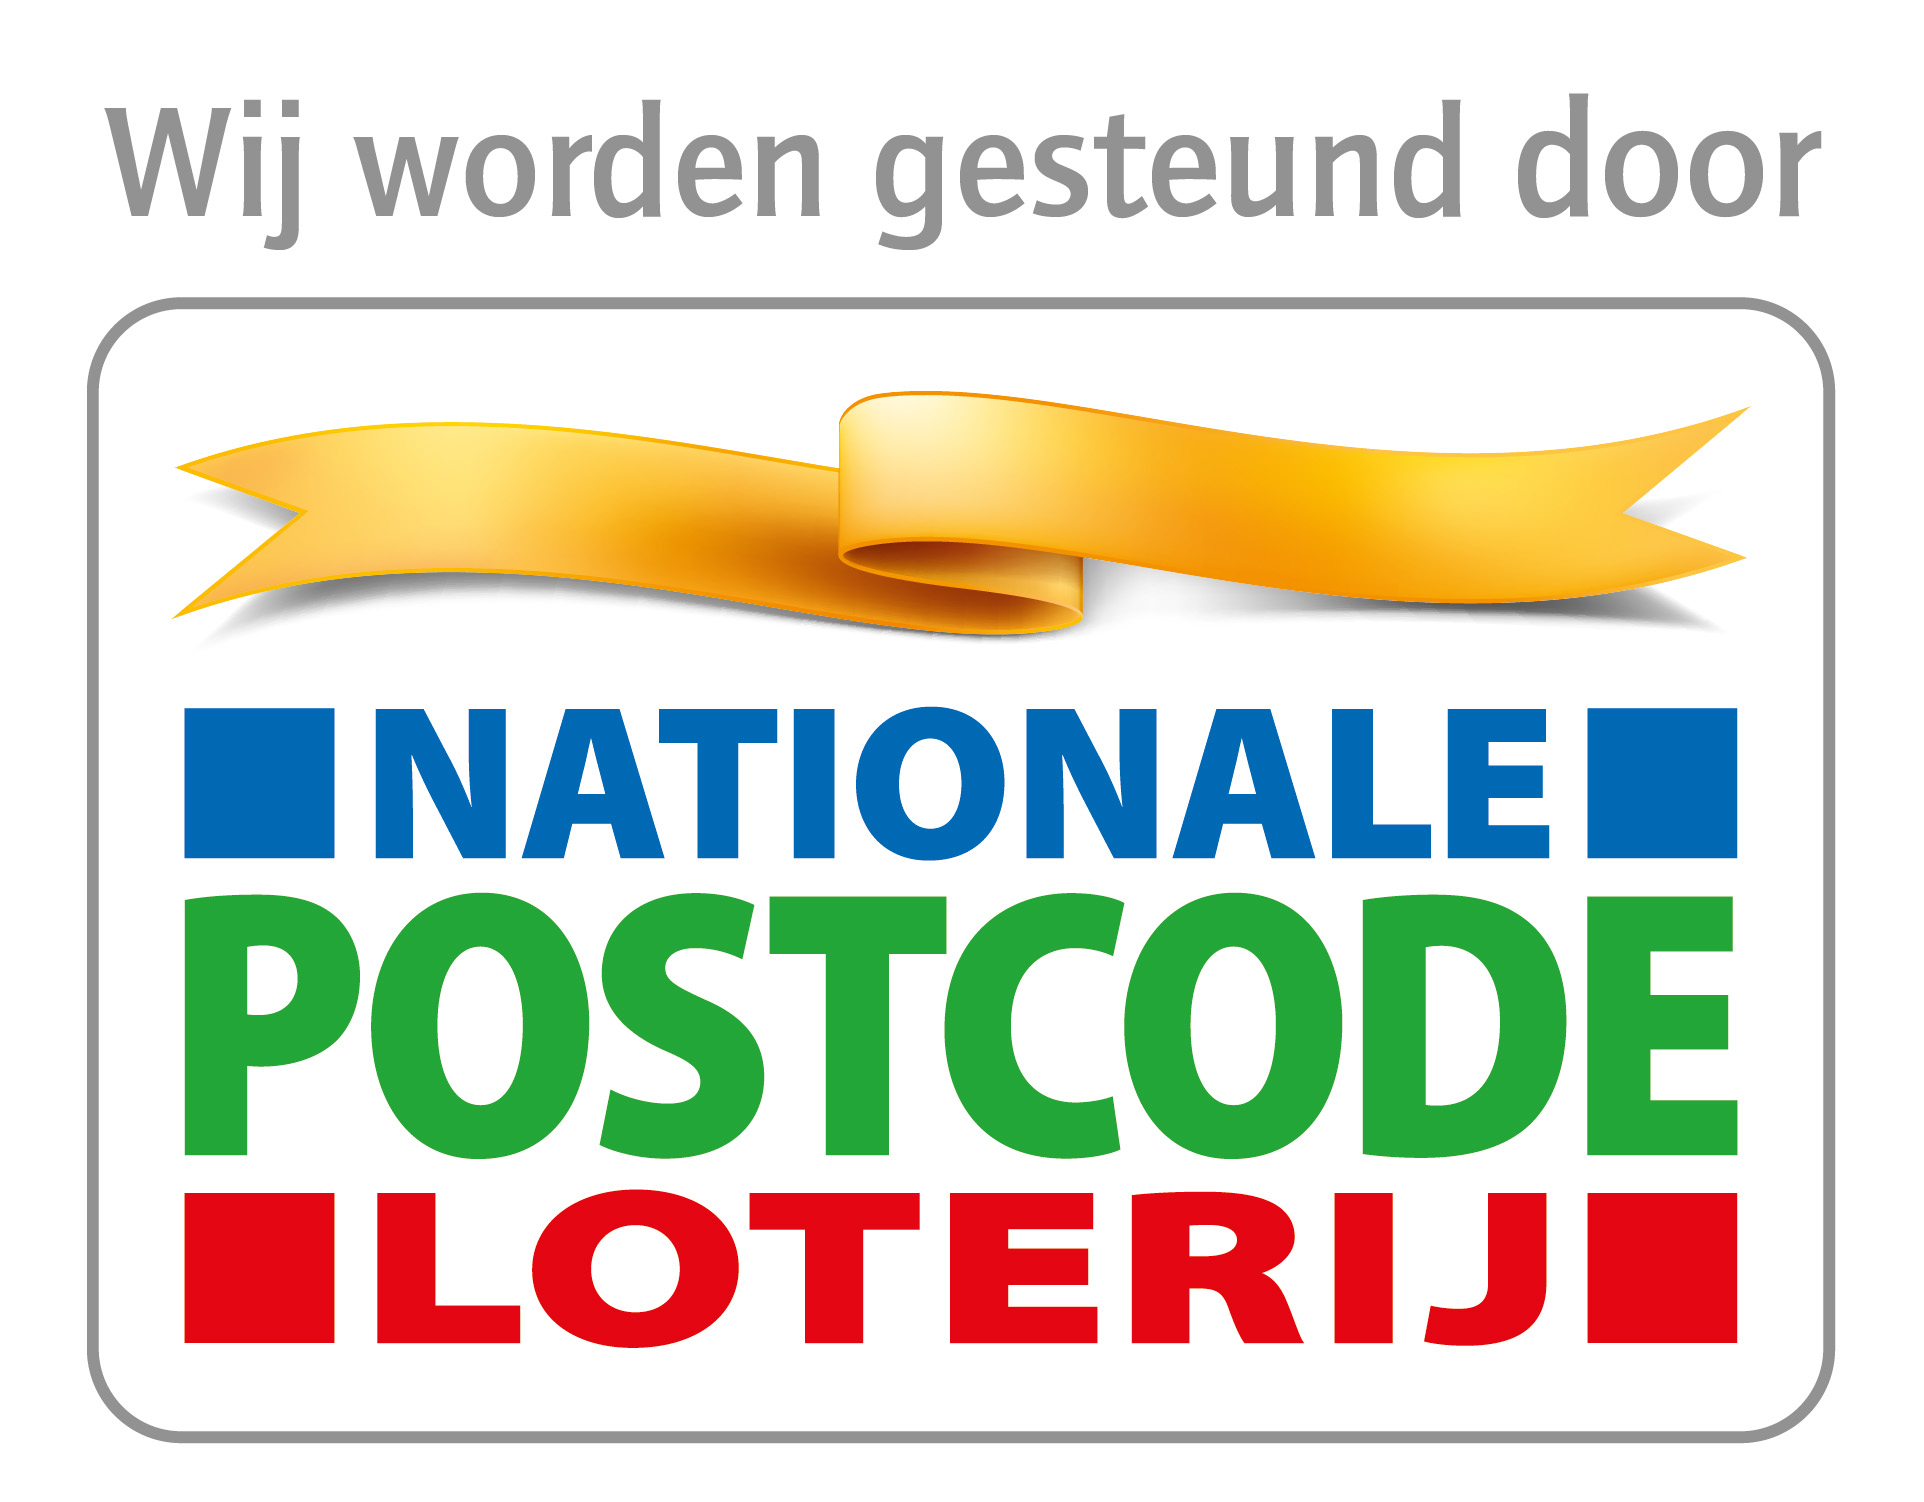 Vereniging Nederlands Cultuurlandschap en de Postcode Loterij